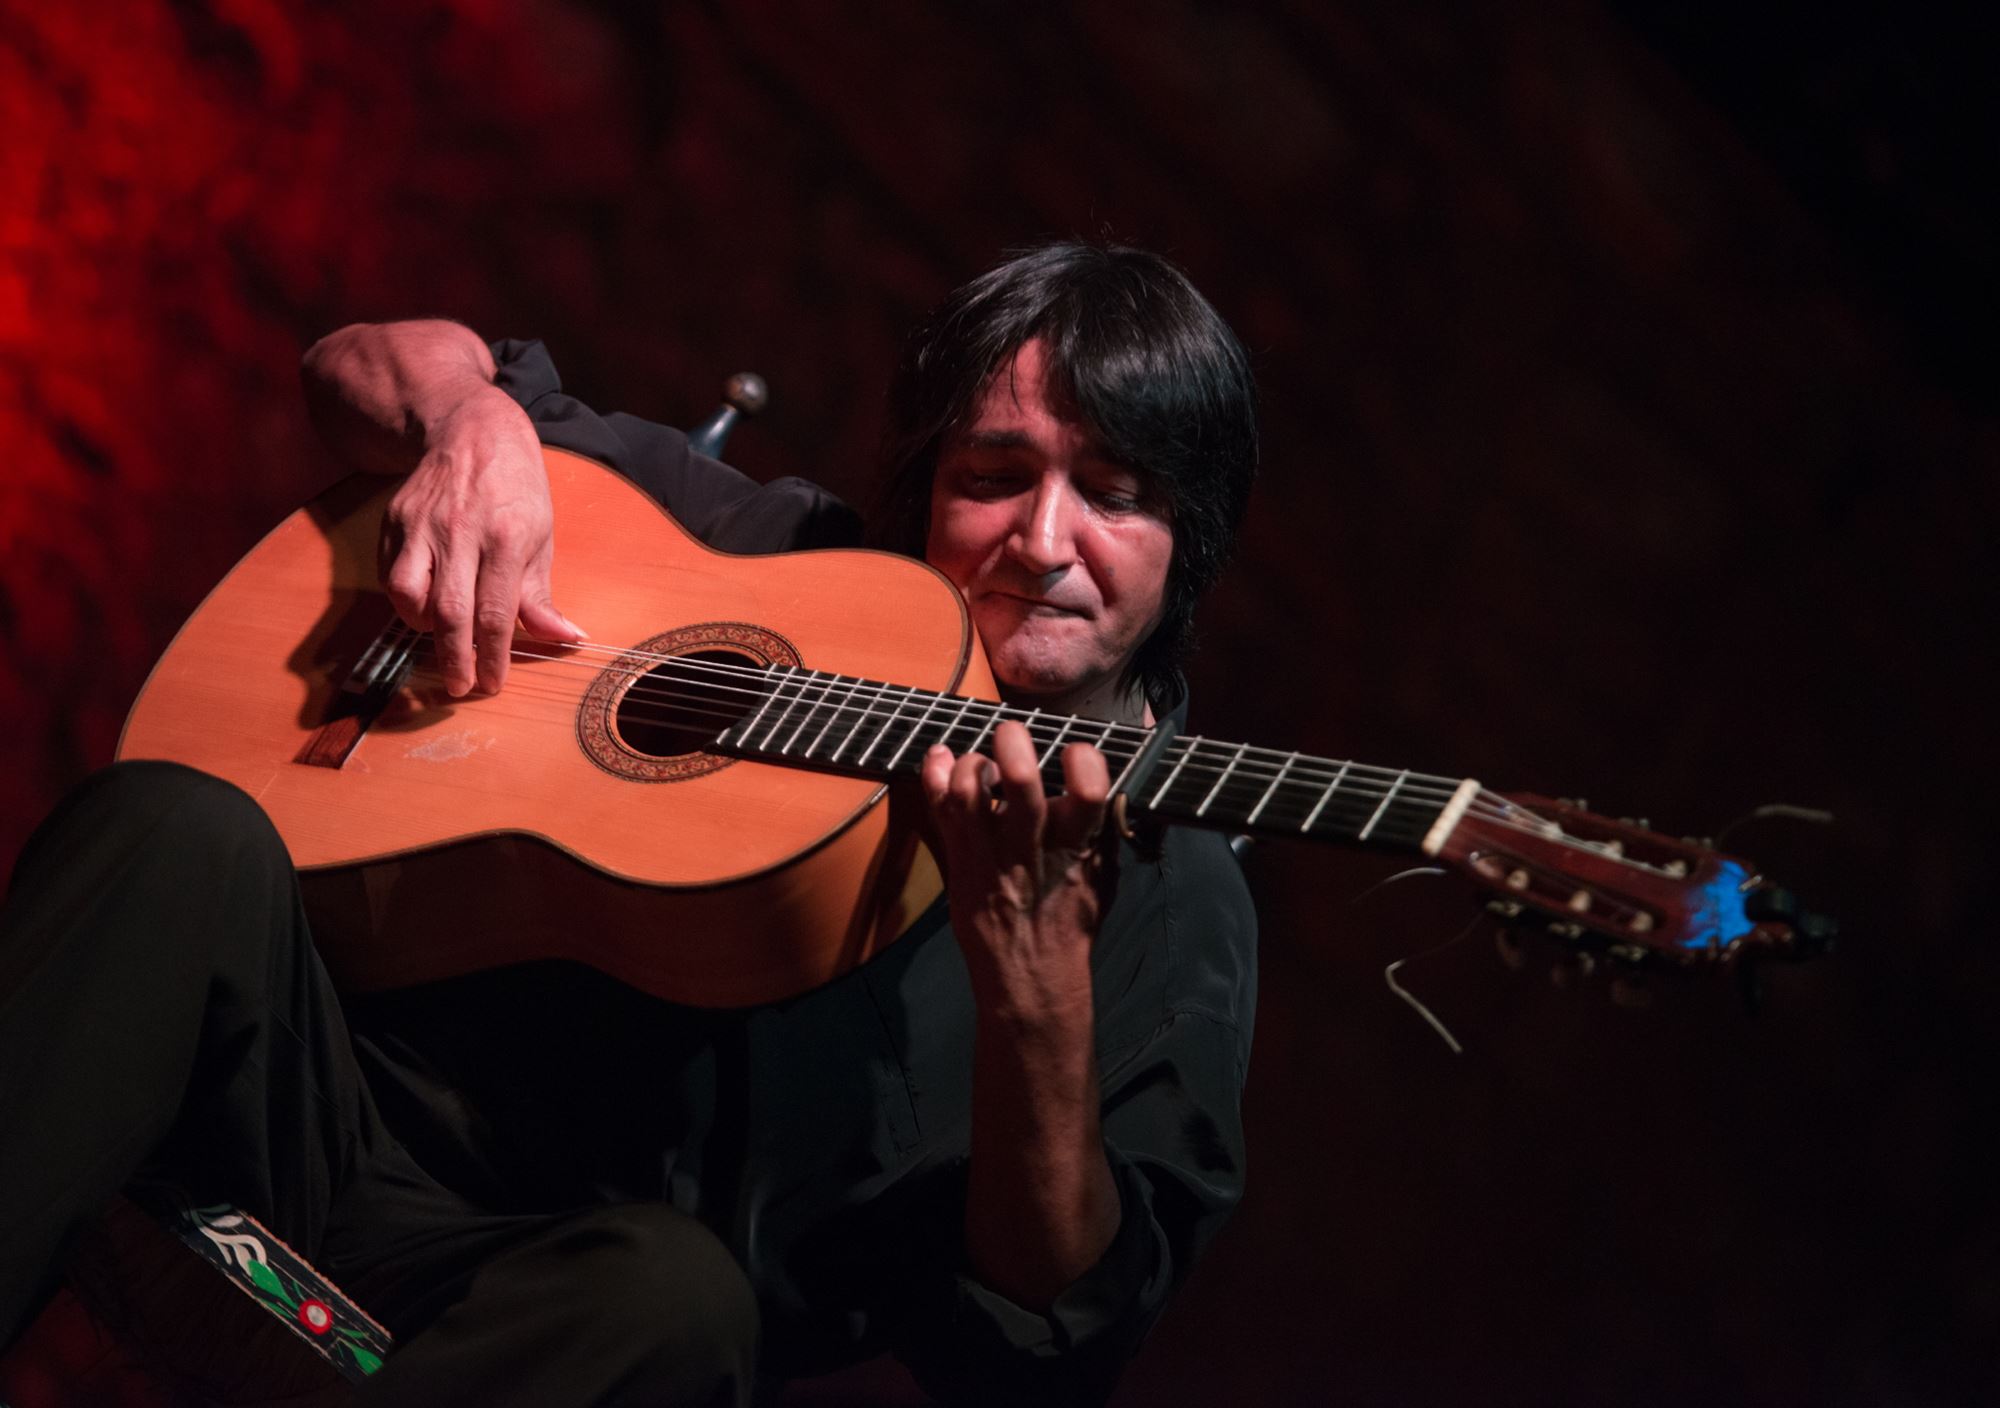 acheter réservations réserver visites guidées tours billets visiter Spectacle du flamenco au Tablao Puro Arte à Jerez de la frontera